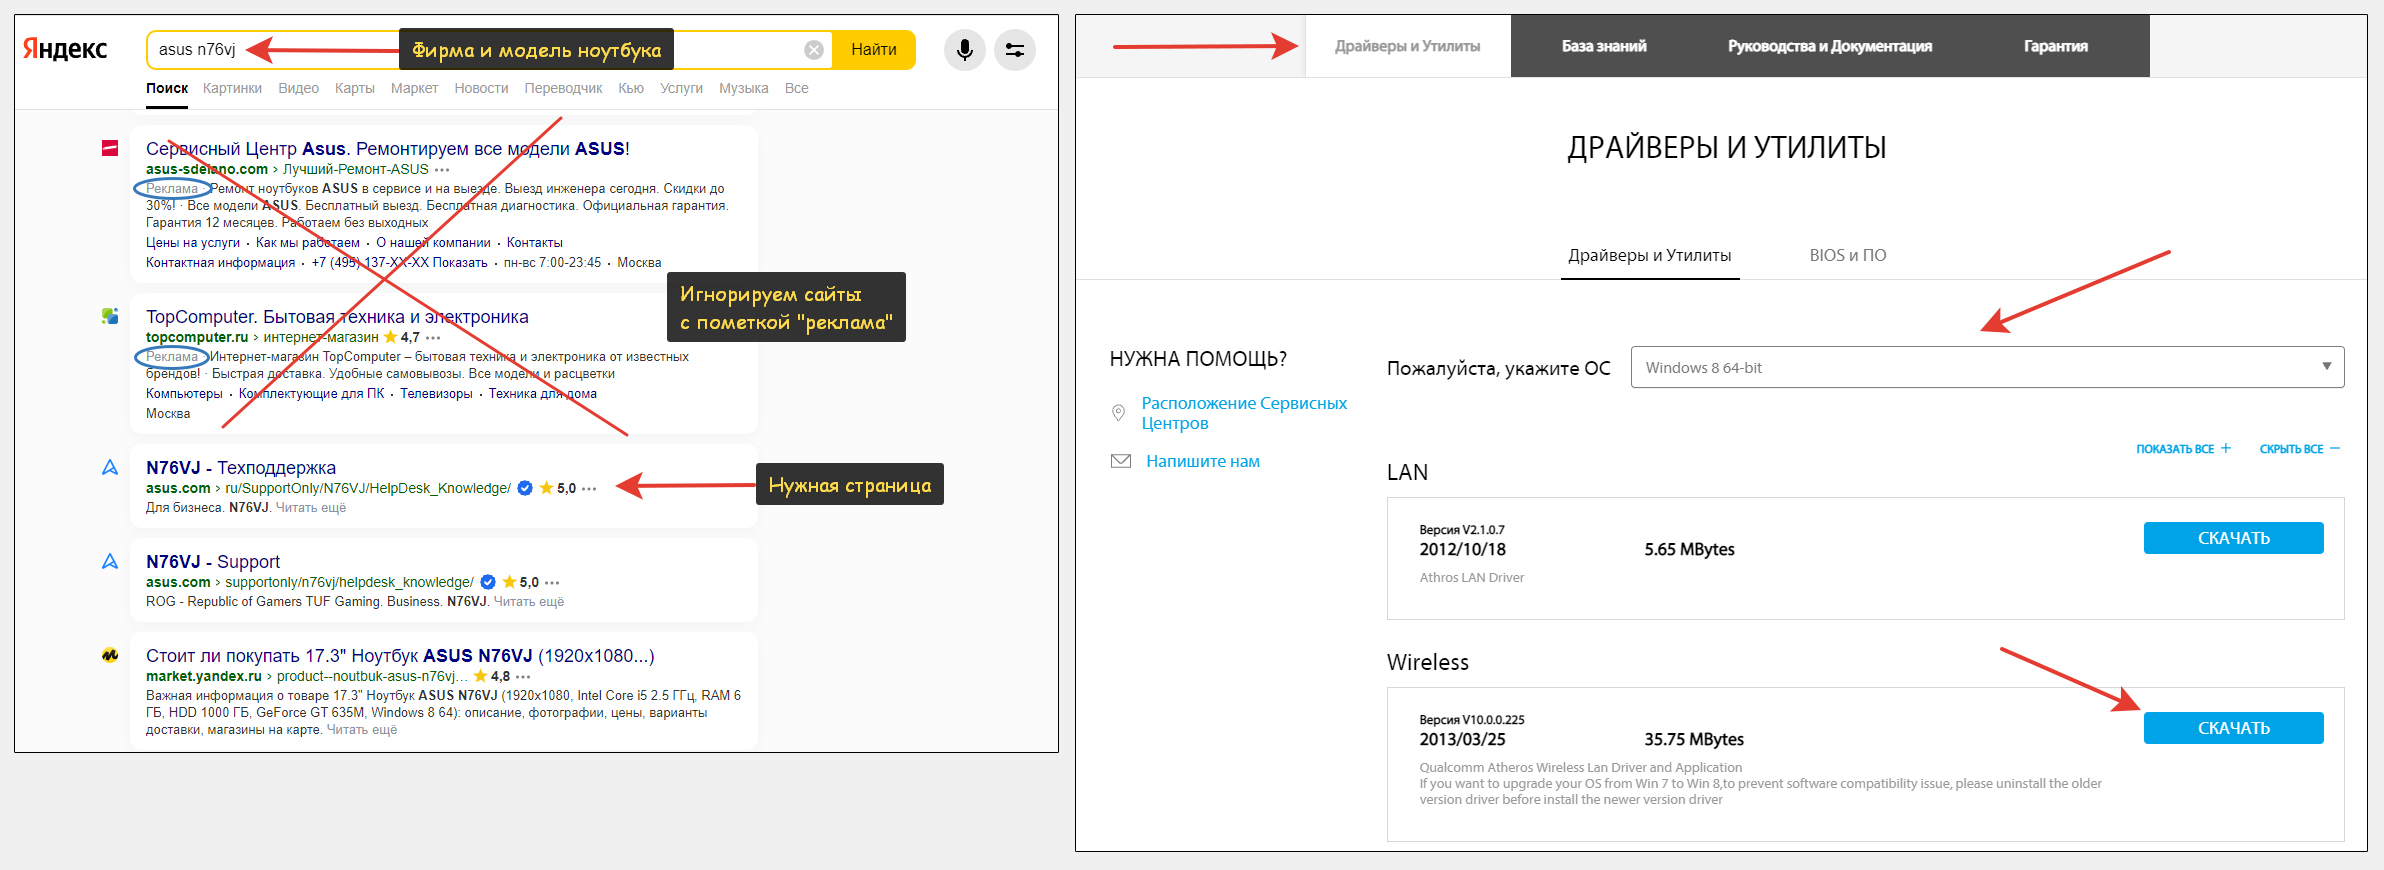 2 окна. 1: фирма и модель ноутбука в поисковом запросе Яндекса. 2: процесс загрузки драйверов Wi-Fi адаптера с сайта производителя.